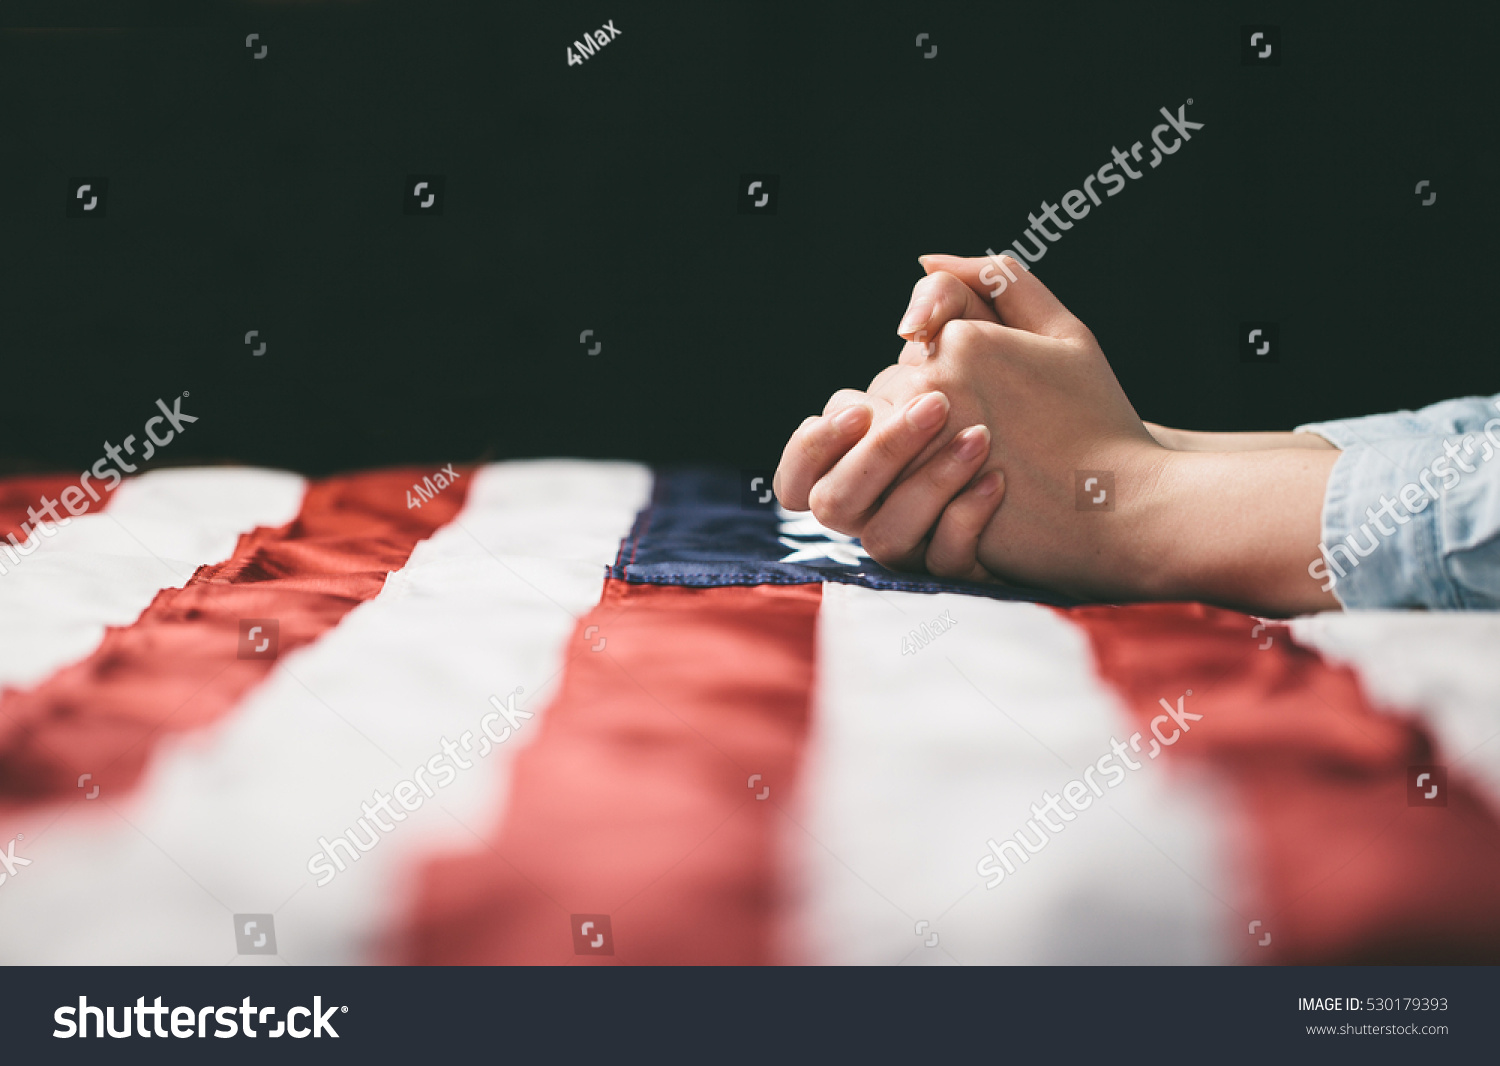 Hands praying over USA flag #530179393